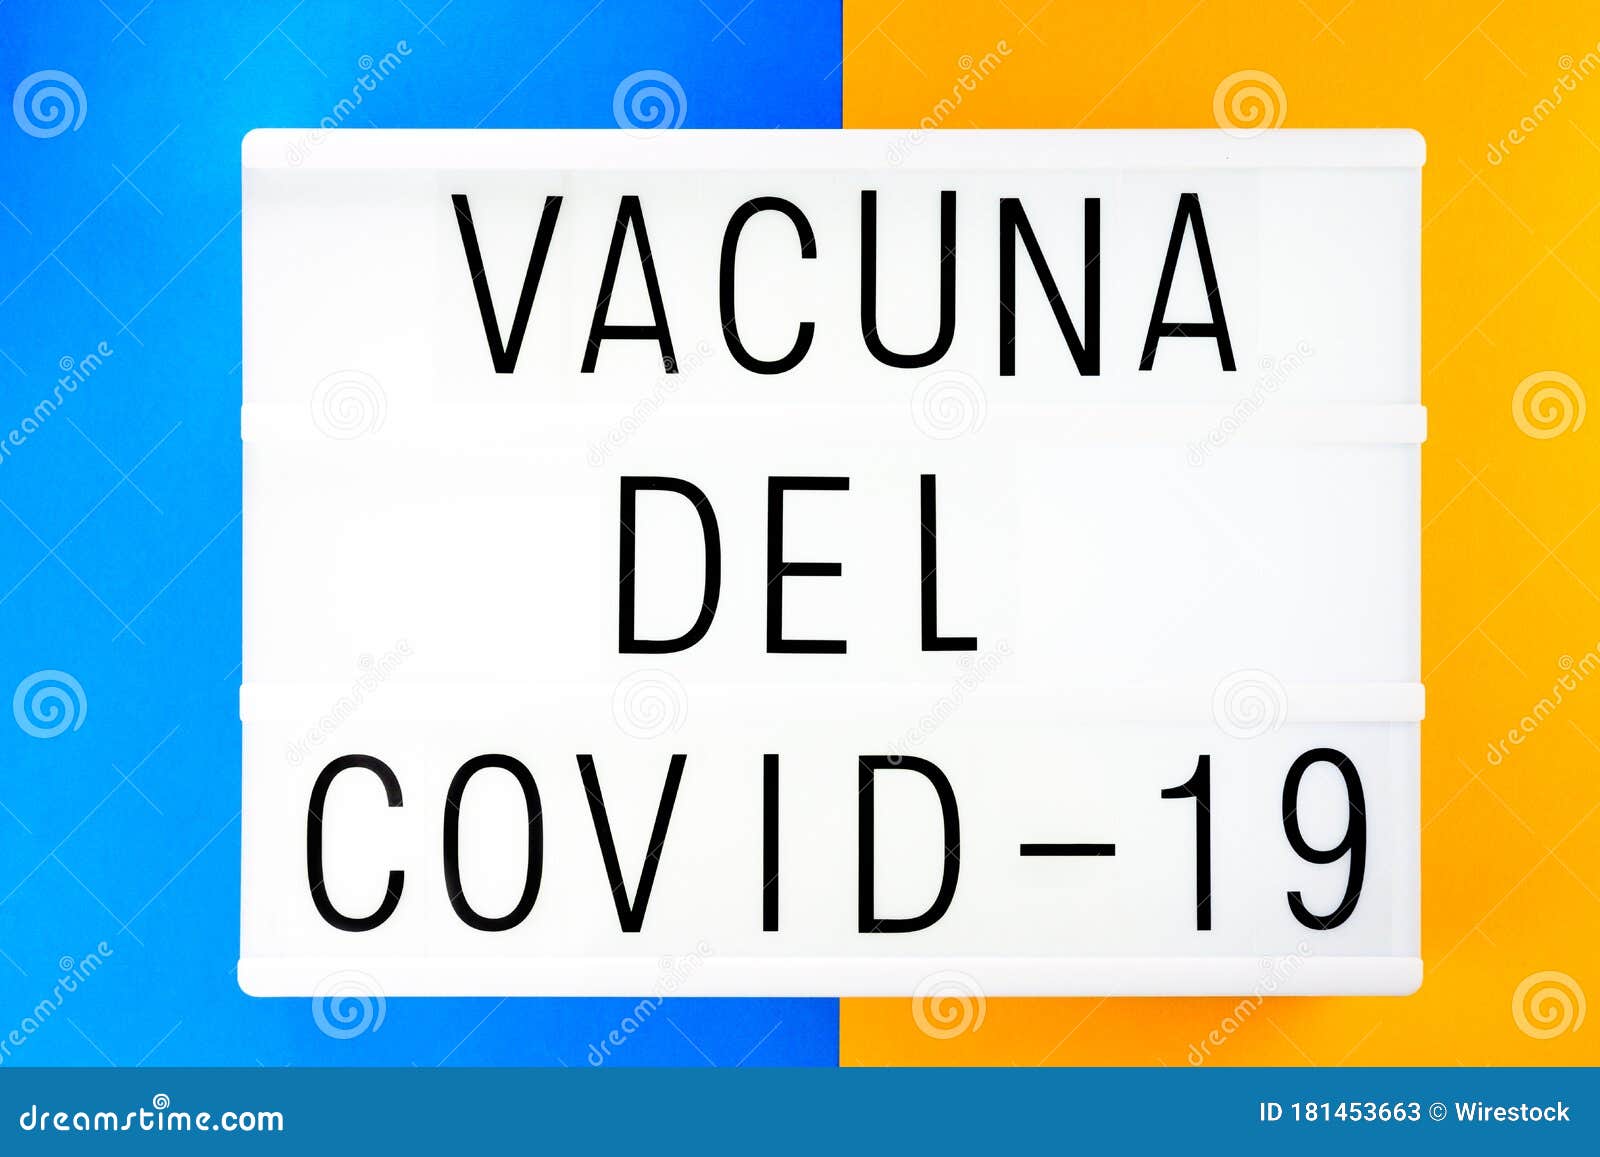 phrase covid-19 vaccine written in spanish, vacuna del covid-19